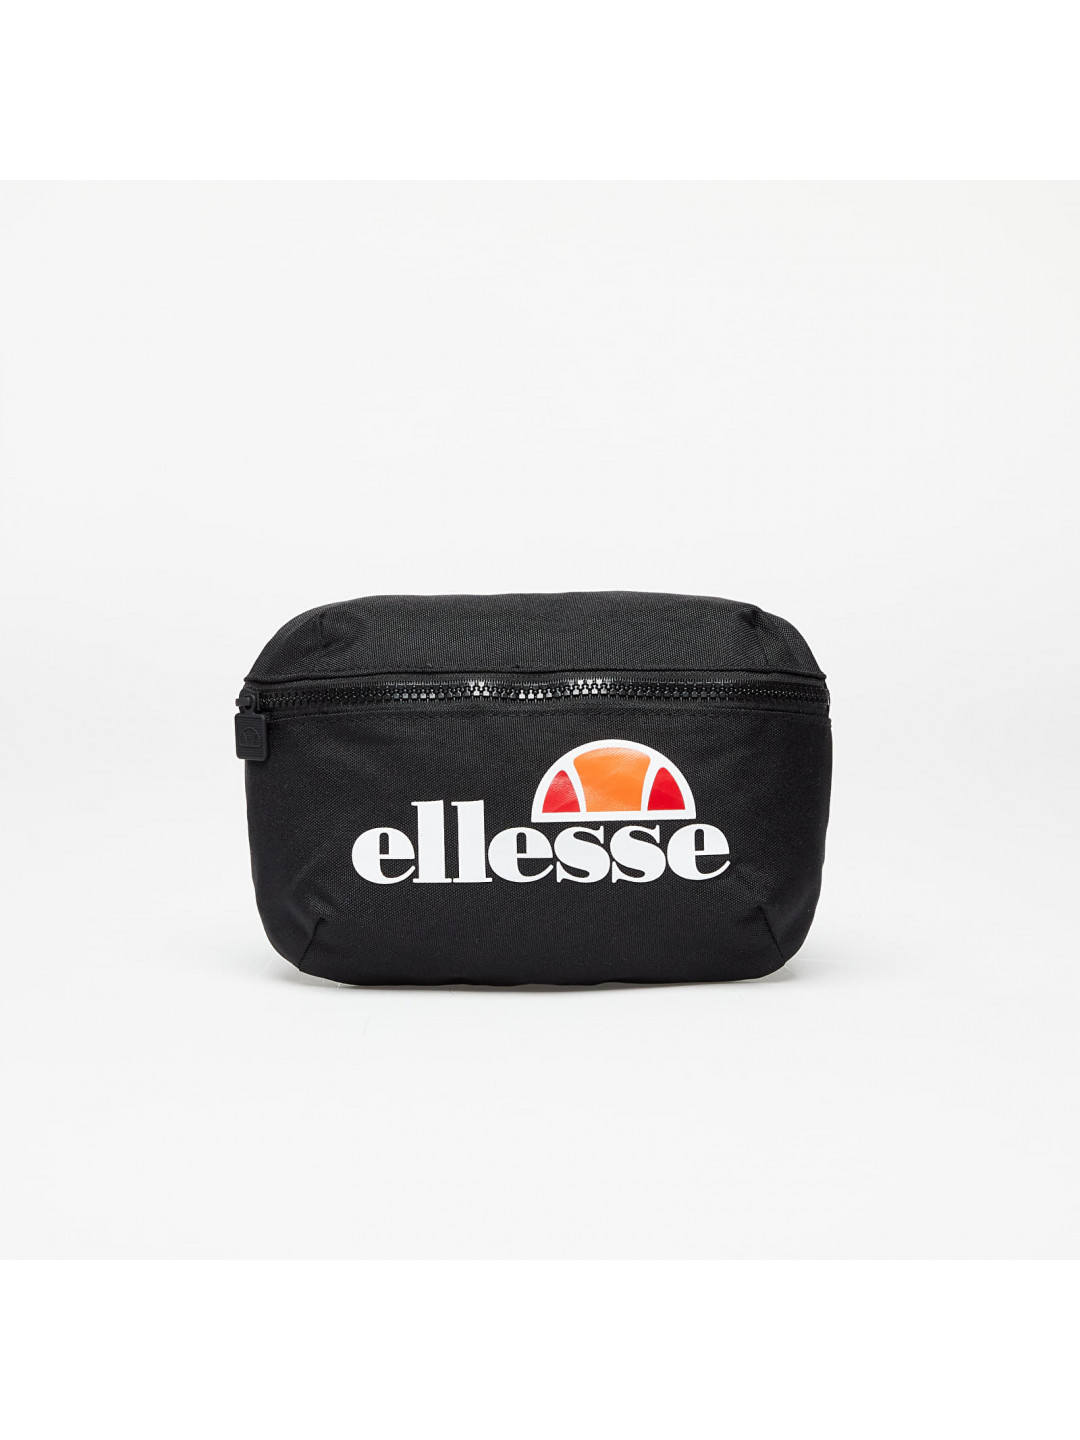 Ellesse Rosca Cross Body Bag Black